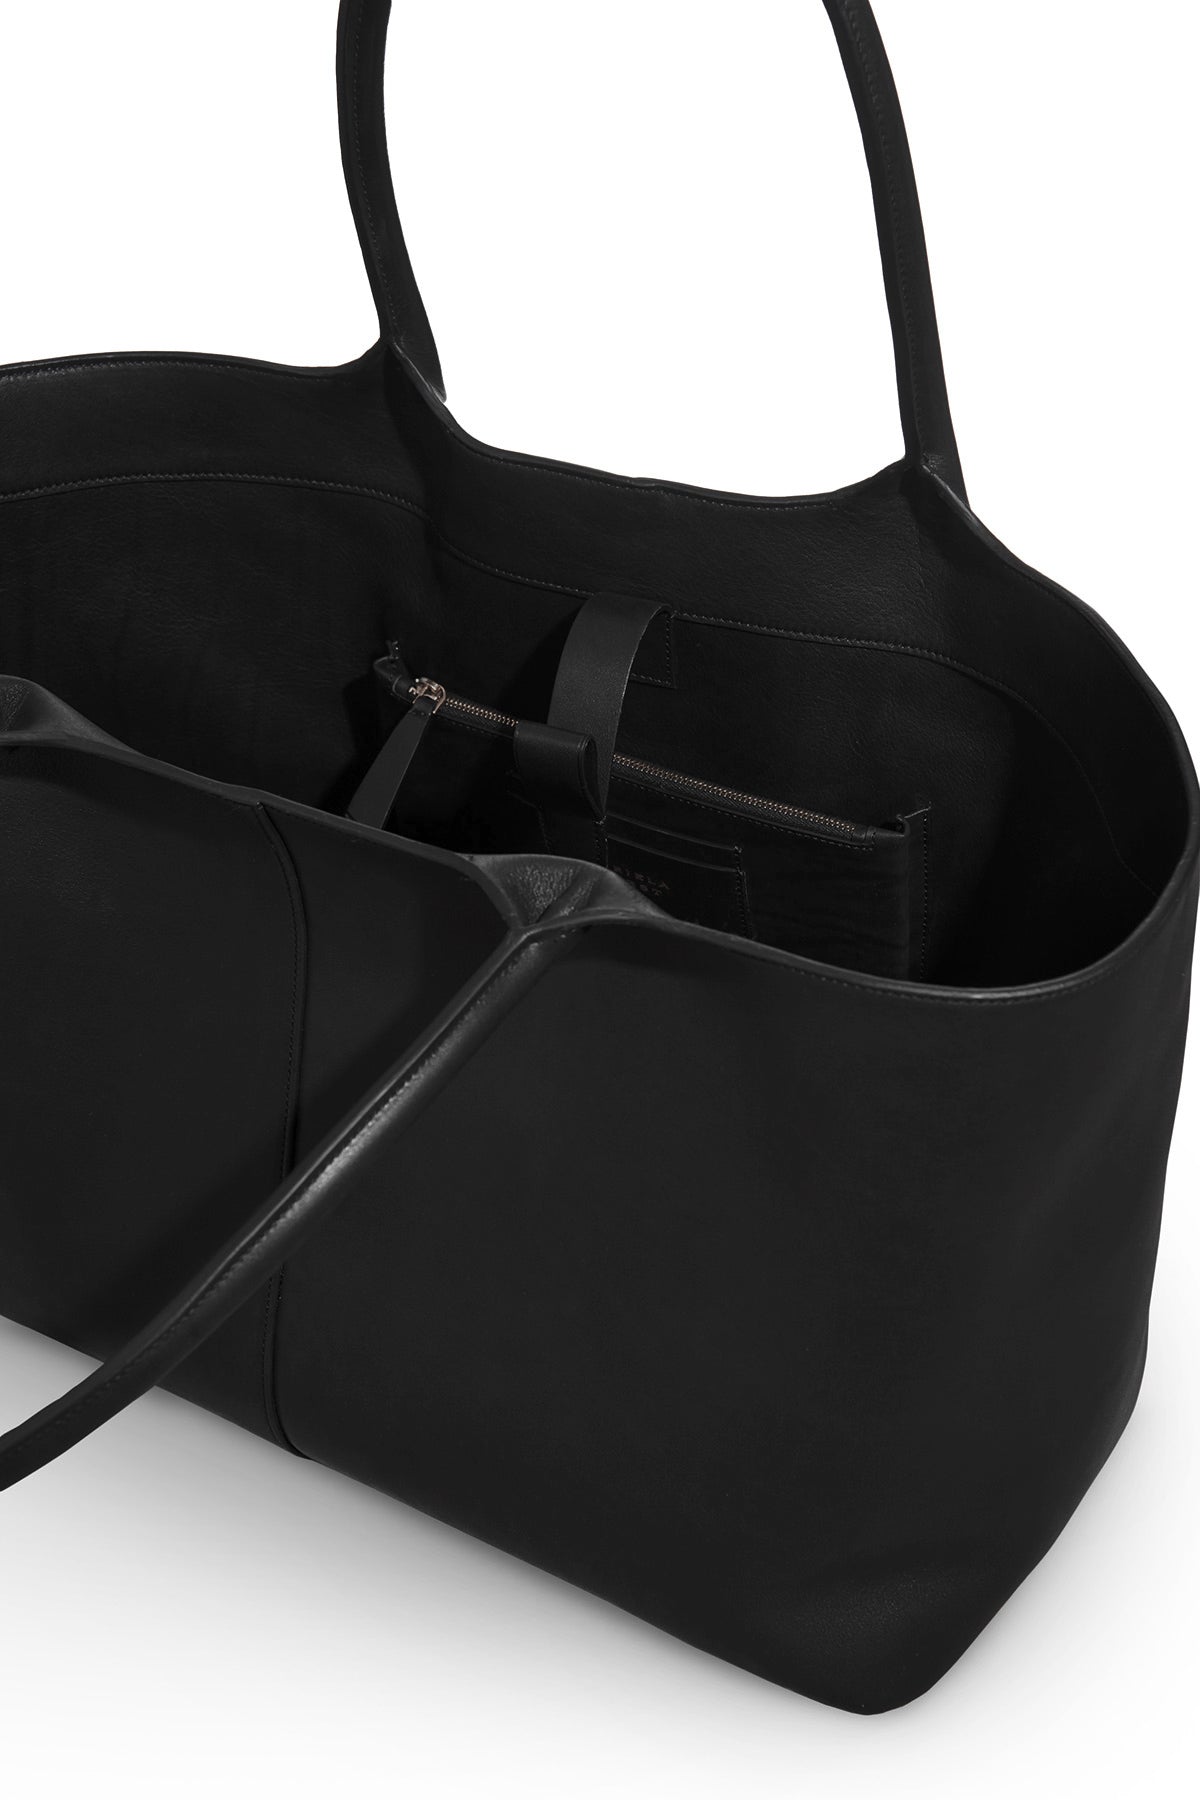 Mcewan Tote Bag in Black Leather